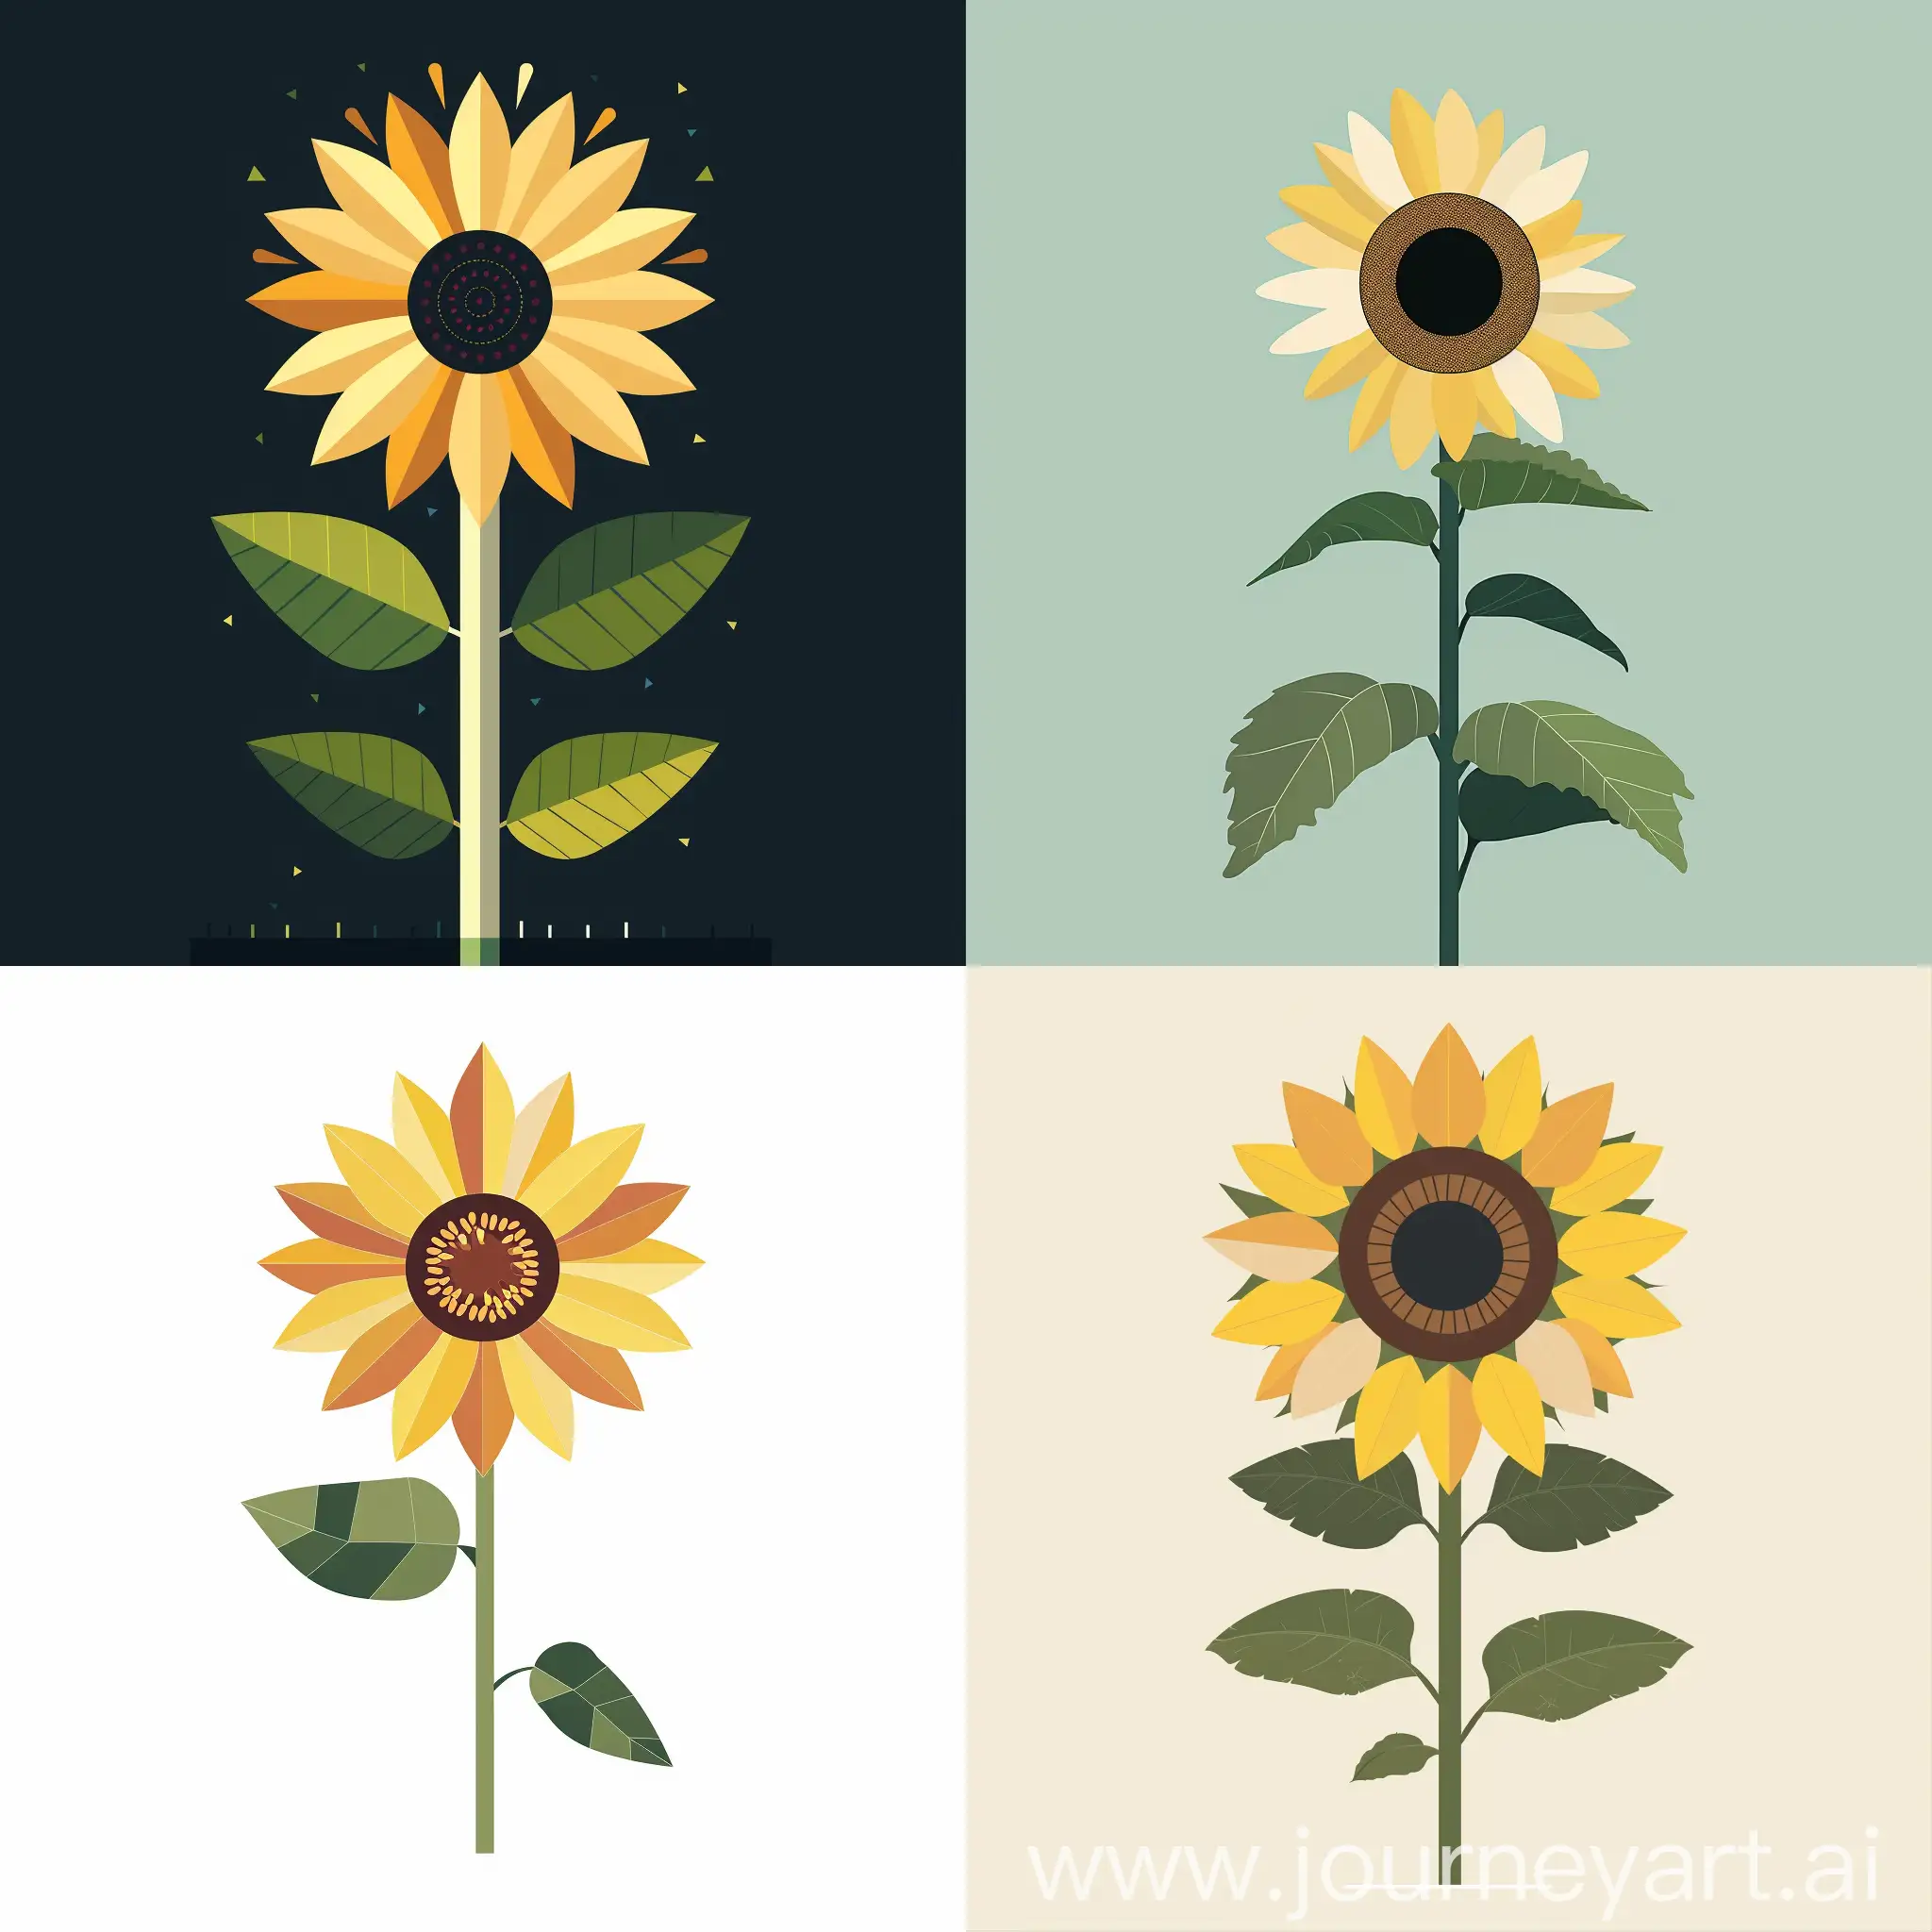 Childrens-Modern-Geometric-Vector-Illustration-of-Sunflower